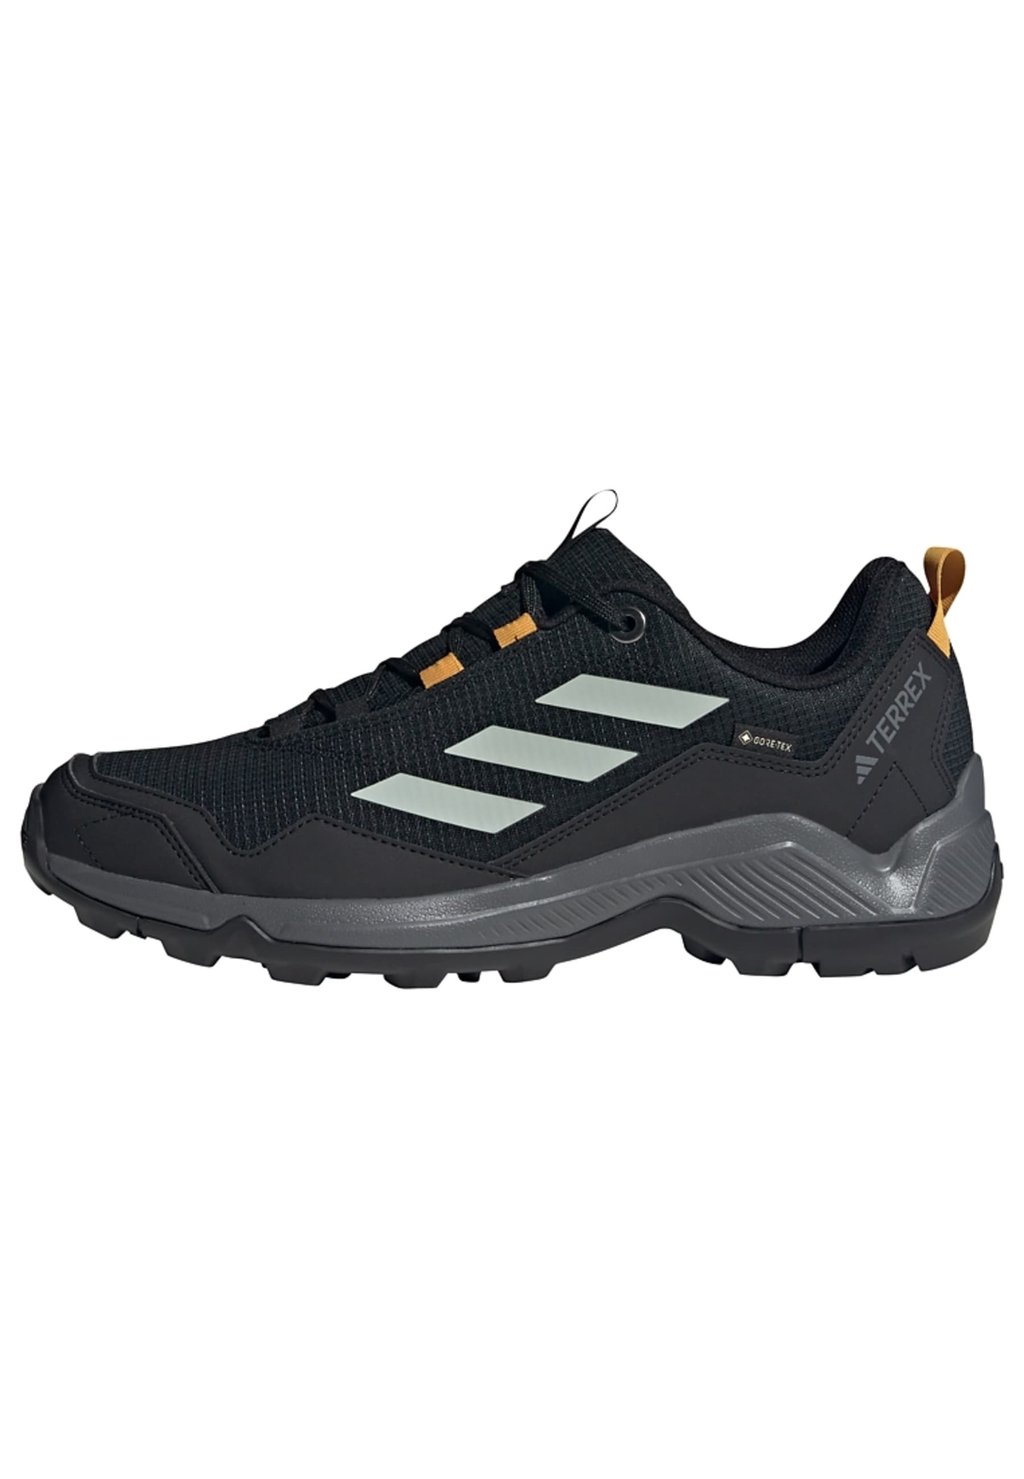 Кроссовки для бега по пересеченной местности Eastrail Gore Tex Adidas, цвет core black silver preloved yellow